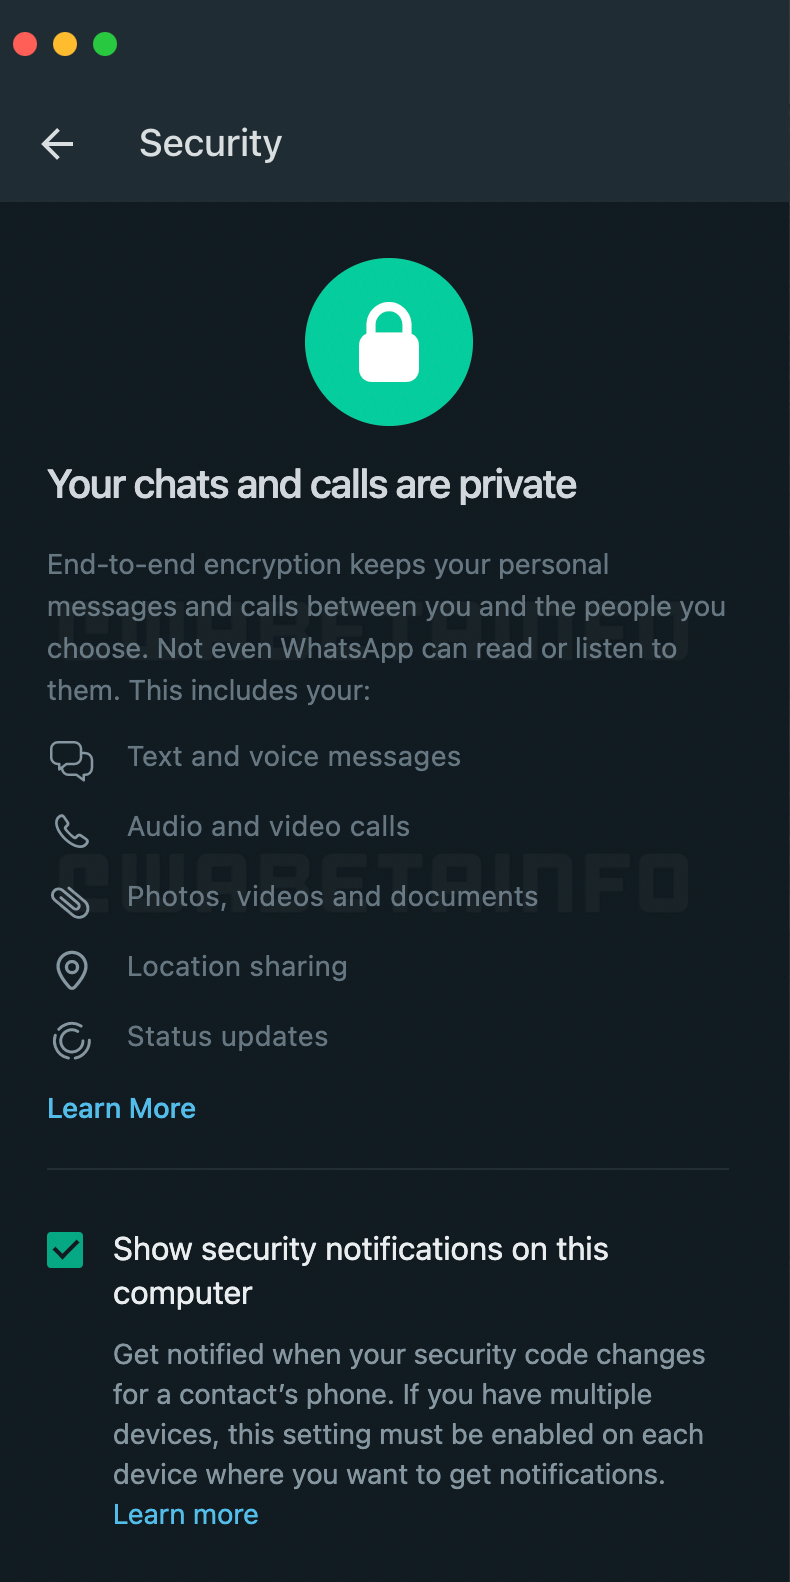 WhatsApp Application SECRET Ändert den Sicherheitsbereich für iPhone und Android